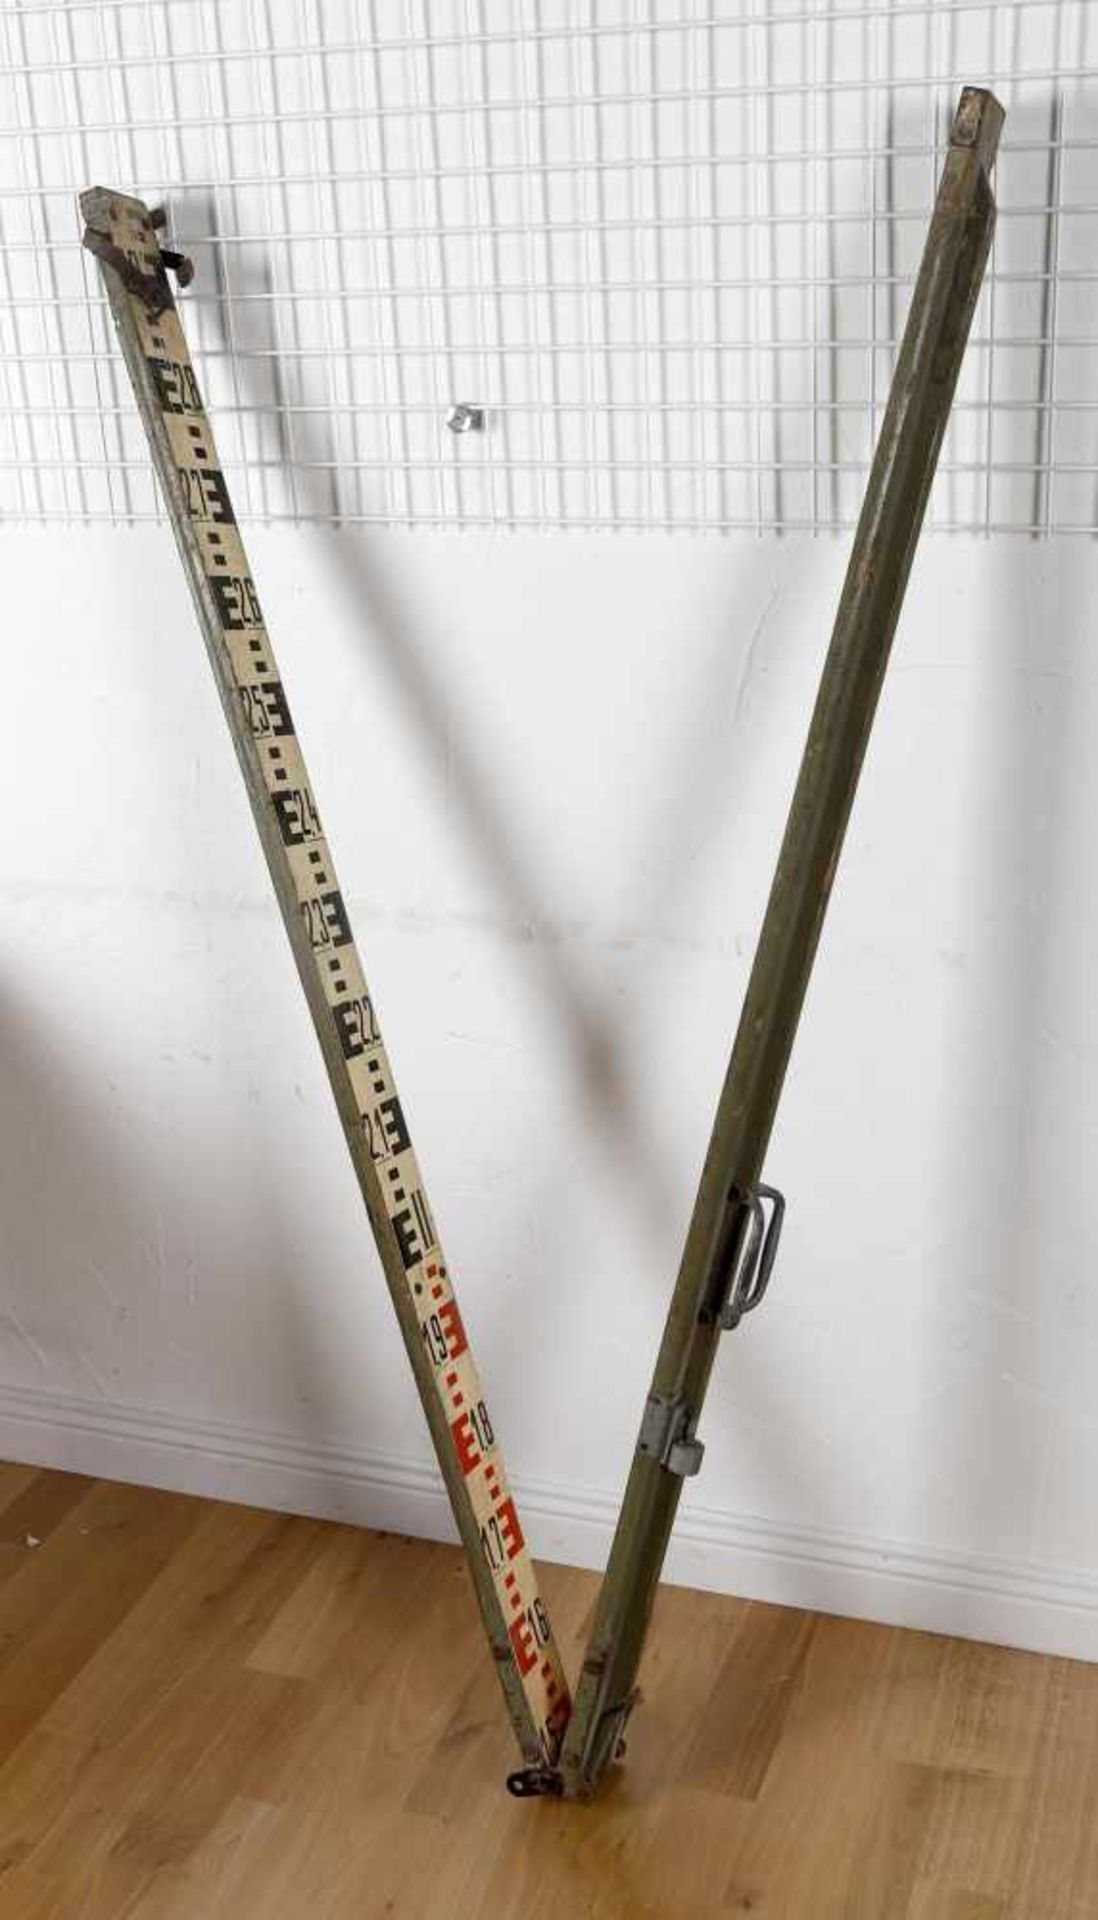 Feldstativ, Holz, mit Metallkopf in grau Hammerschlag-Lackierung - Bild 2 aus 2